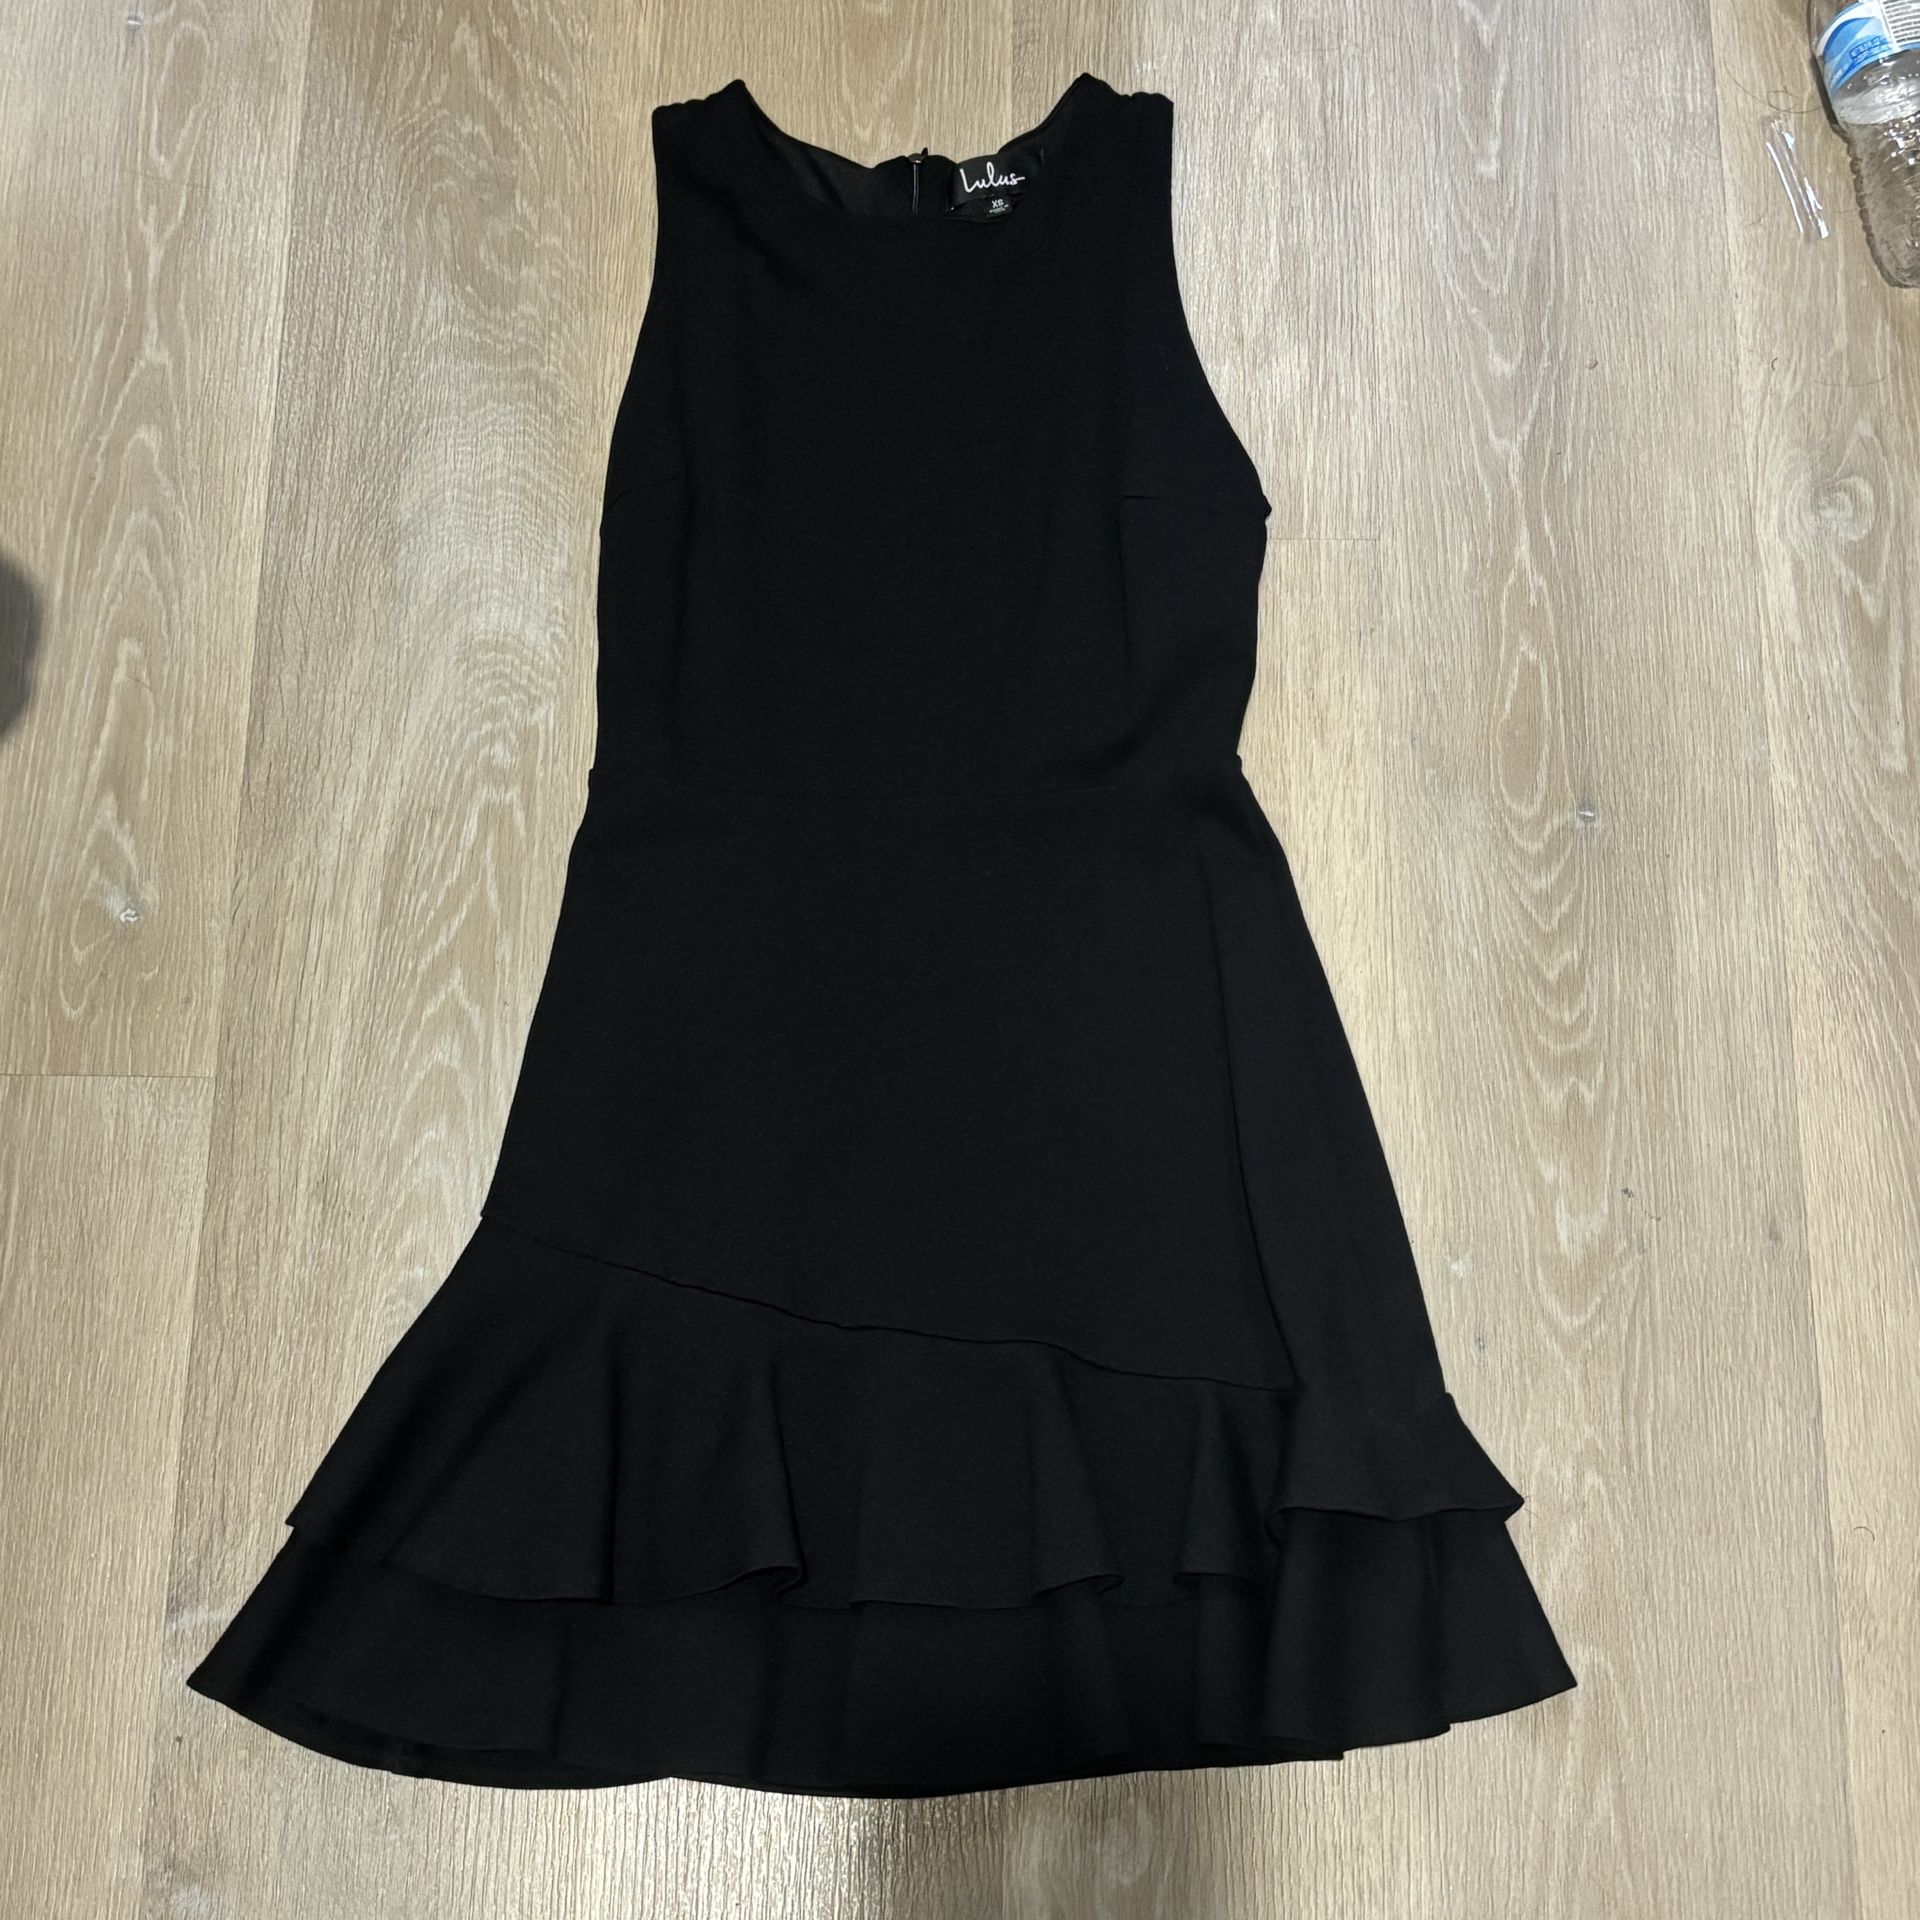 Lulus Black Dress